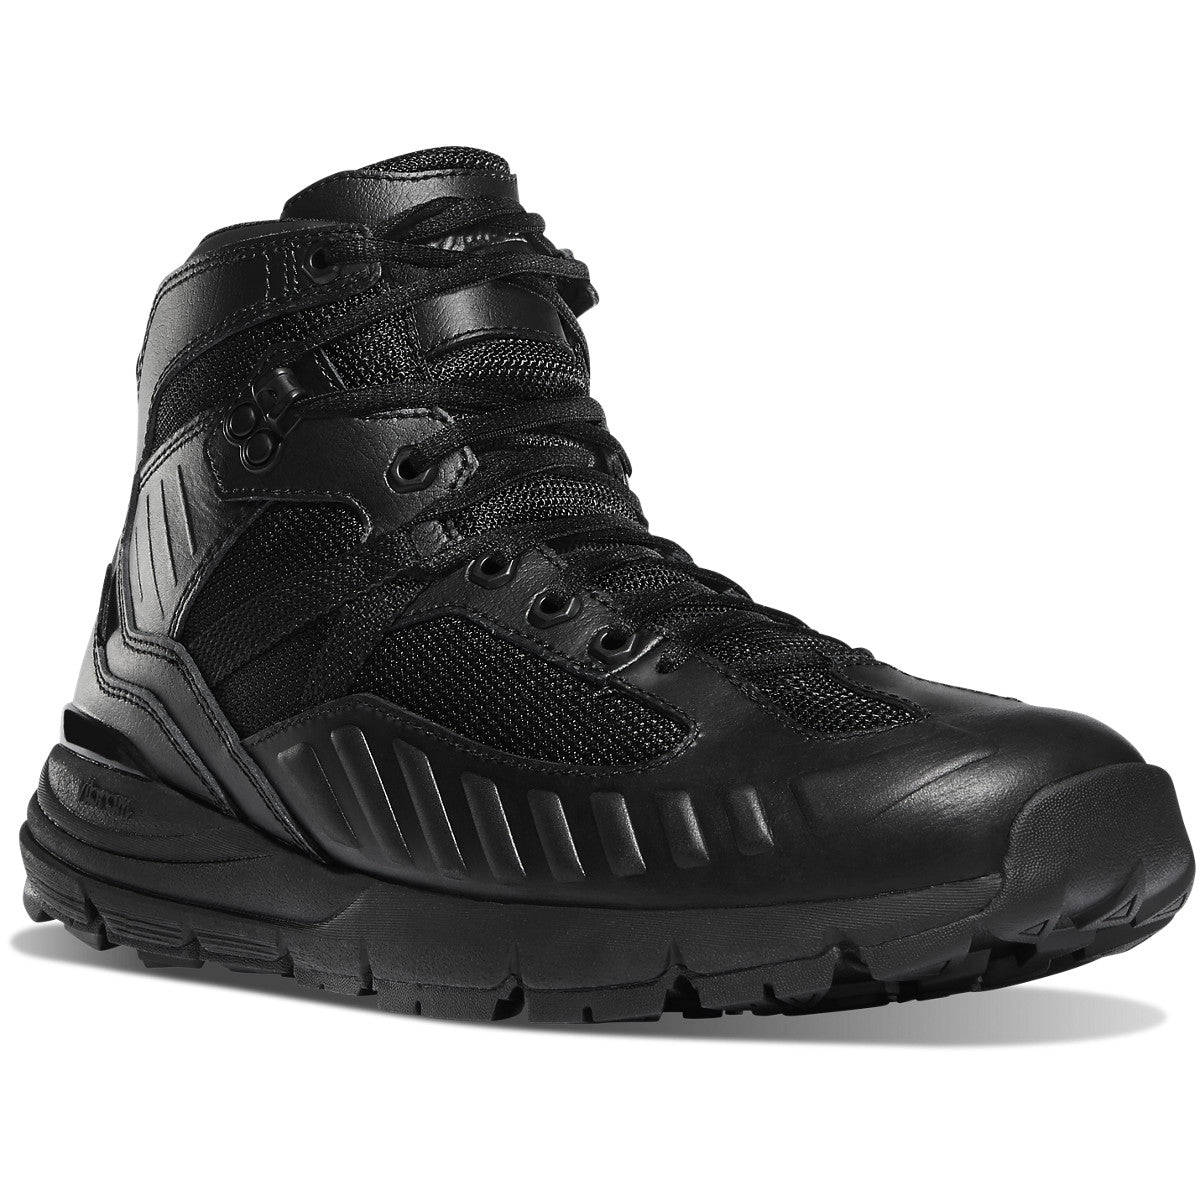 Danner Men's Fullbore 4.5" Waterproof Duty Boot - Black - 20511 7 / Medium / Black - Overlook Boots